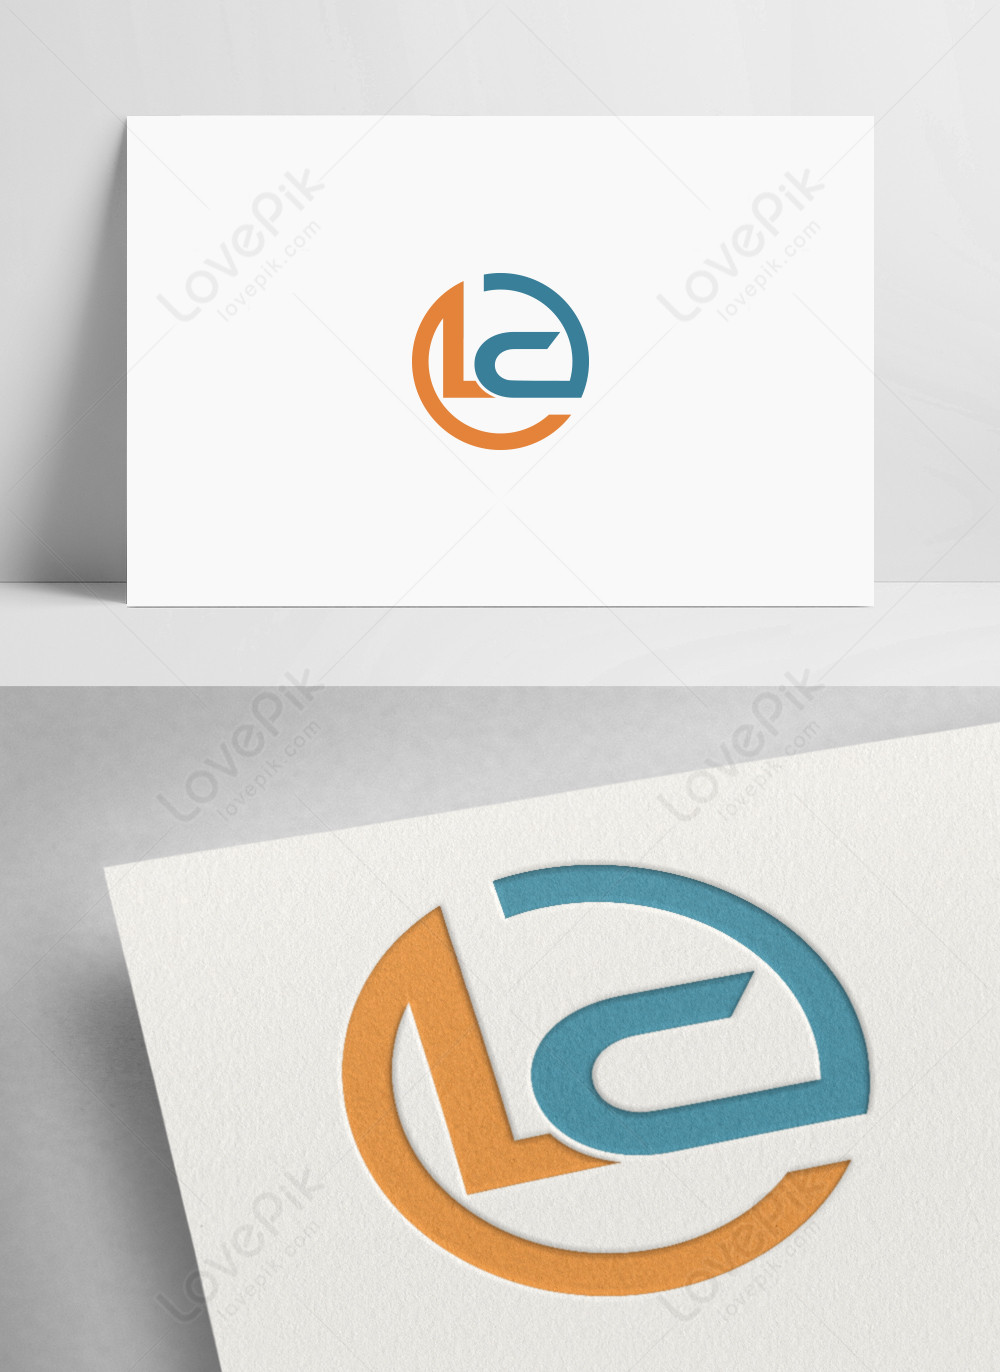 Letter L + C Logo by Aryan Thakur - Logo Designer on Dribbble